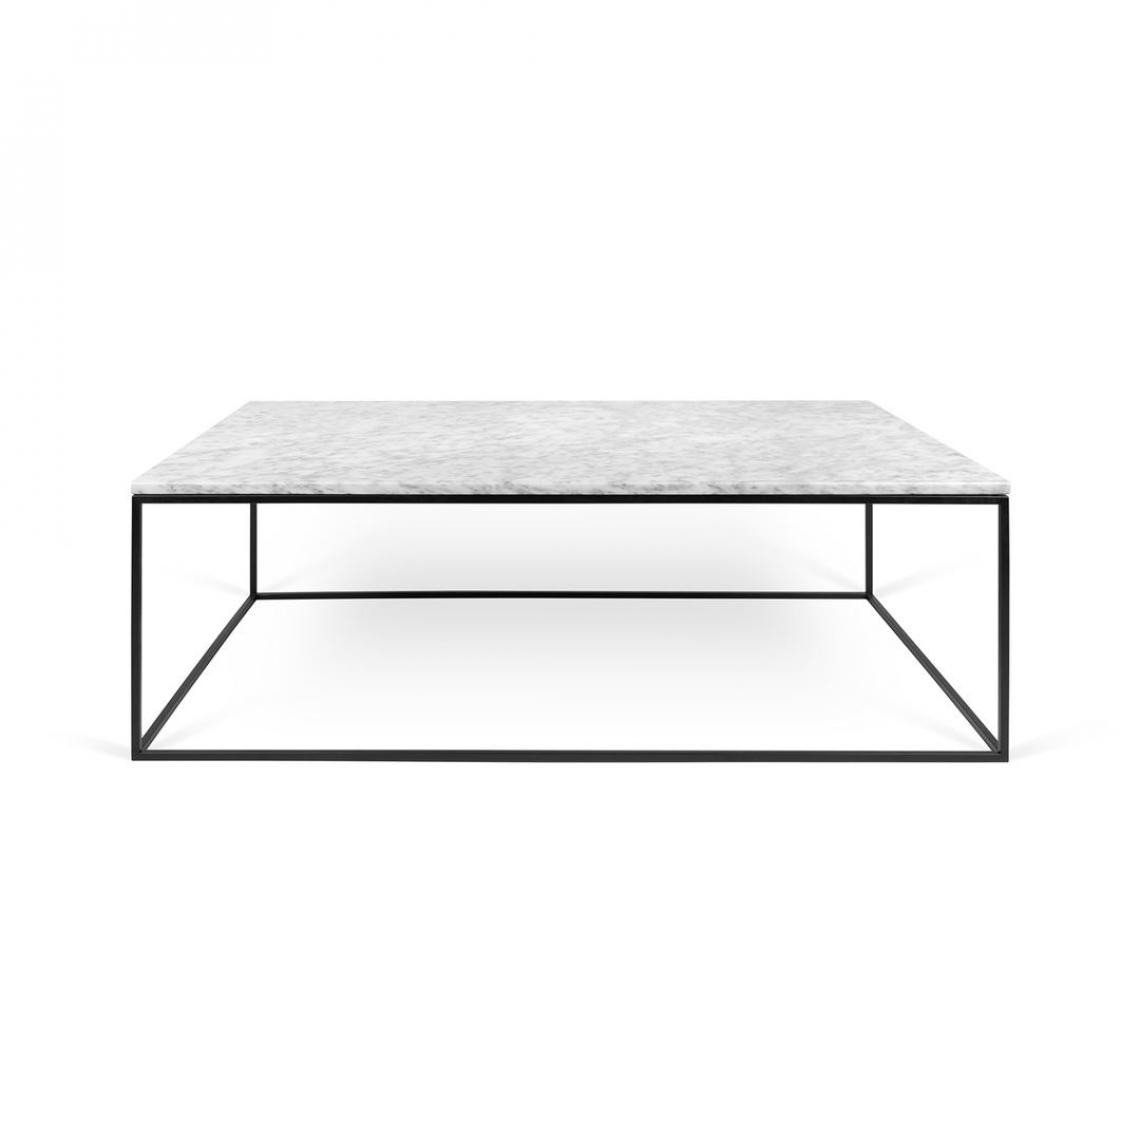 Temahome - Table basse marbre GLEAM 120 - blanc et noir - Tables à manger